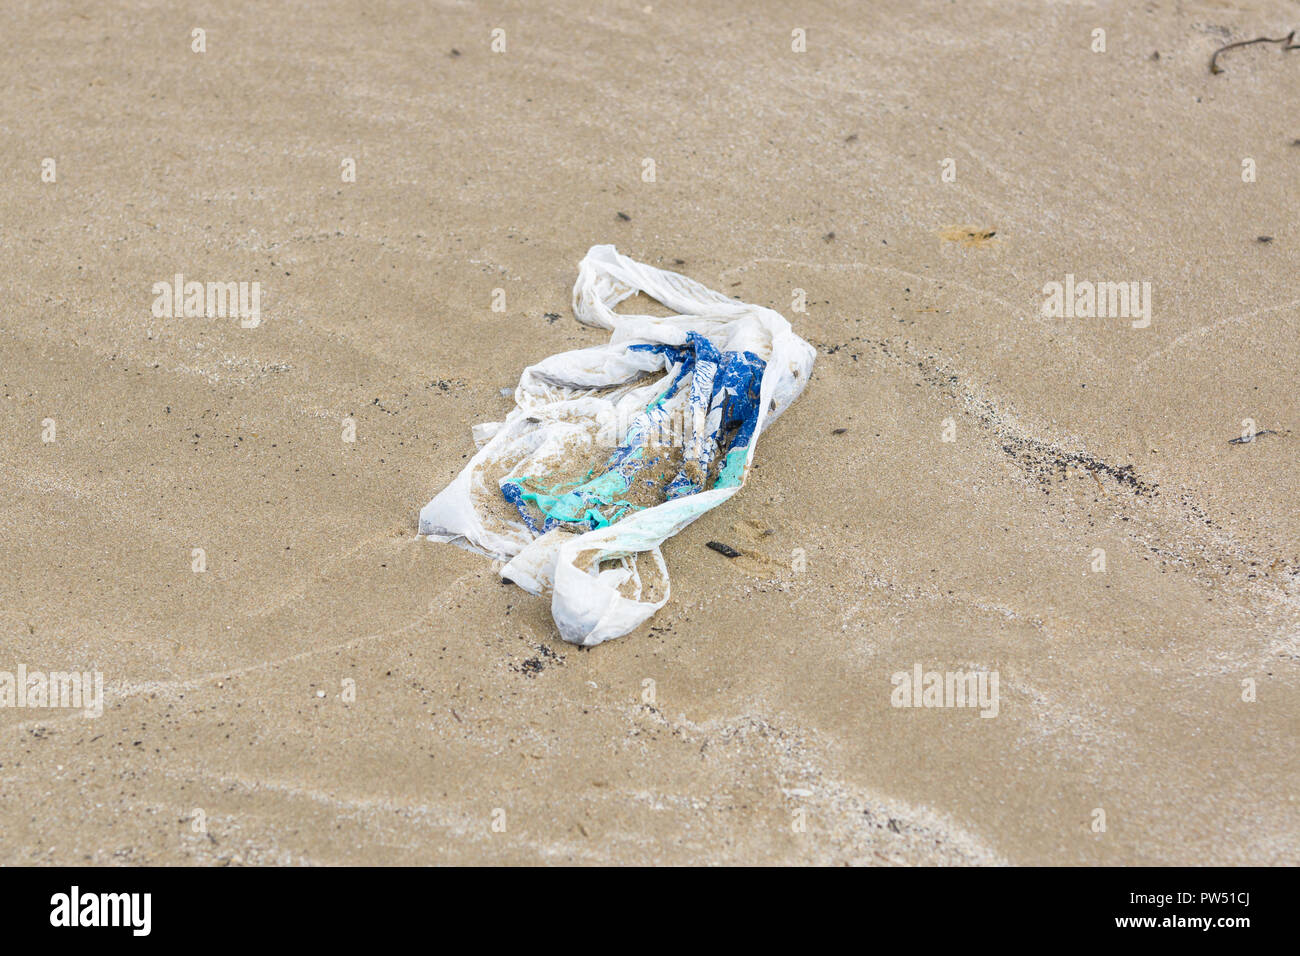 Sacs en plastique à usage unique est échoué sur une plage et la partie enterrée dans le sable un exemple des ordures dans les océans du monde entier Banque D'Images